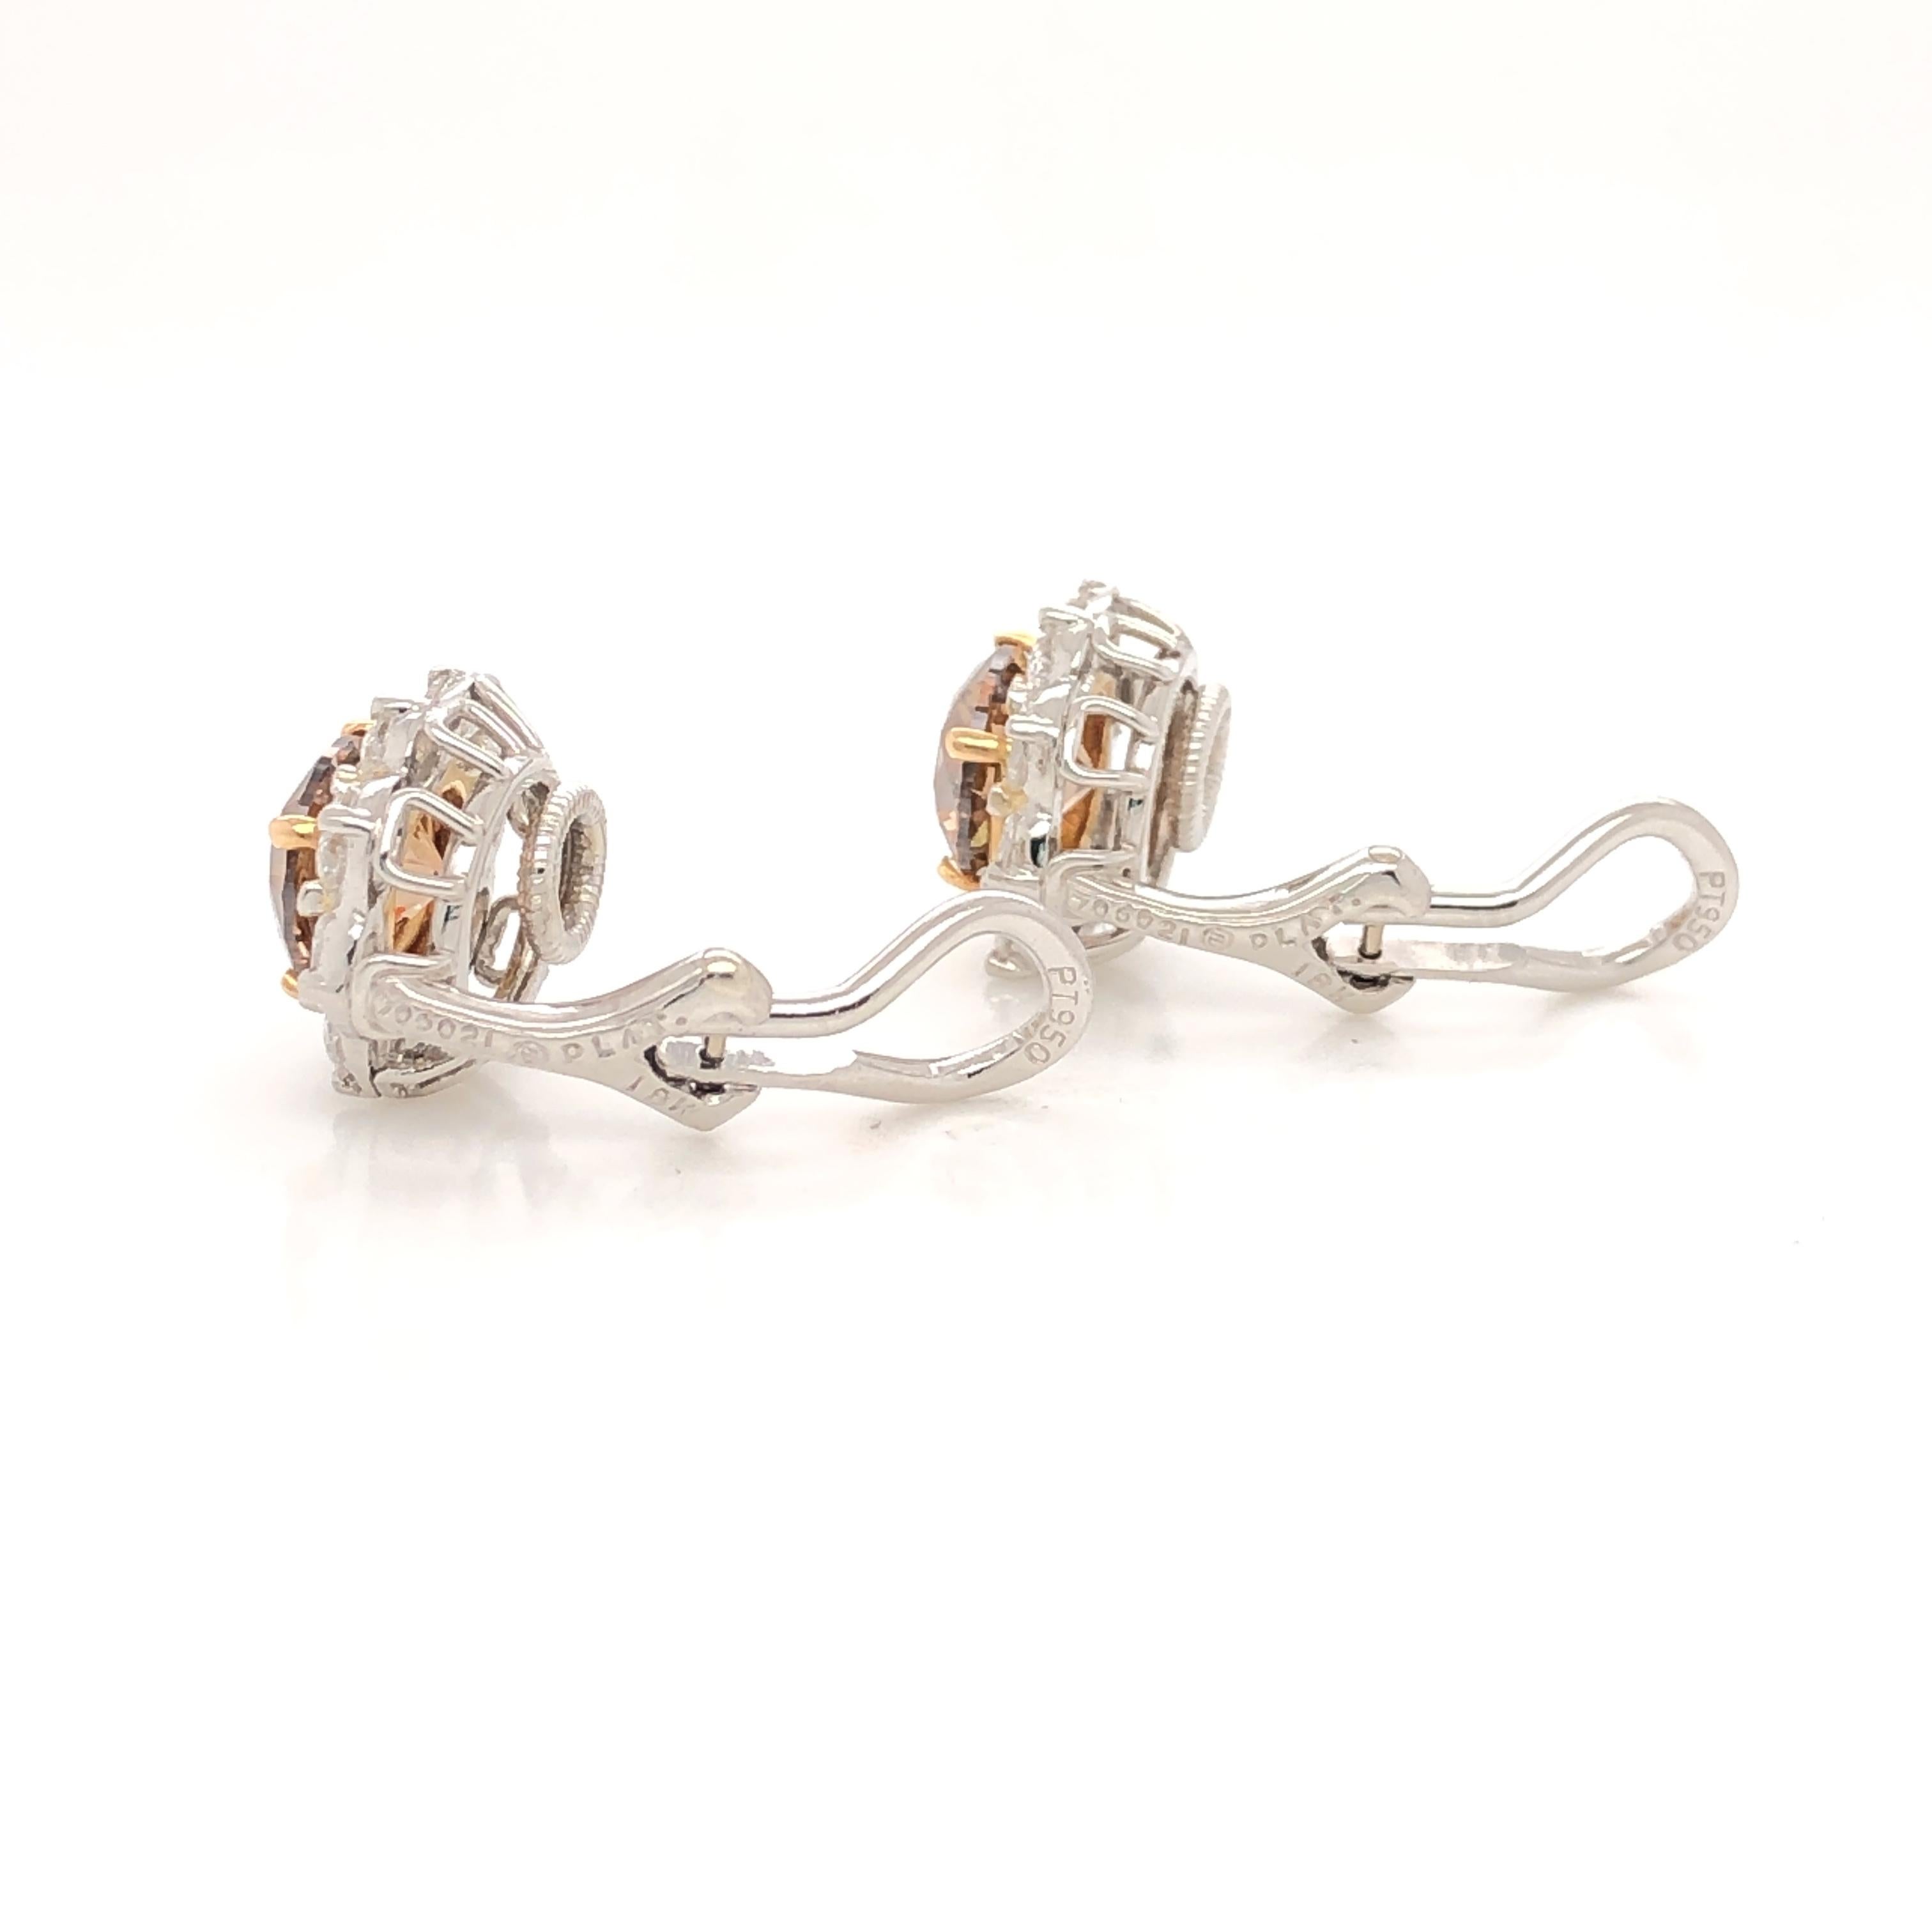 Contemporary Oscar Heyman Cognac Diamond Clip Earrings For Sale